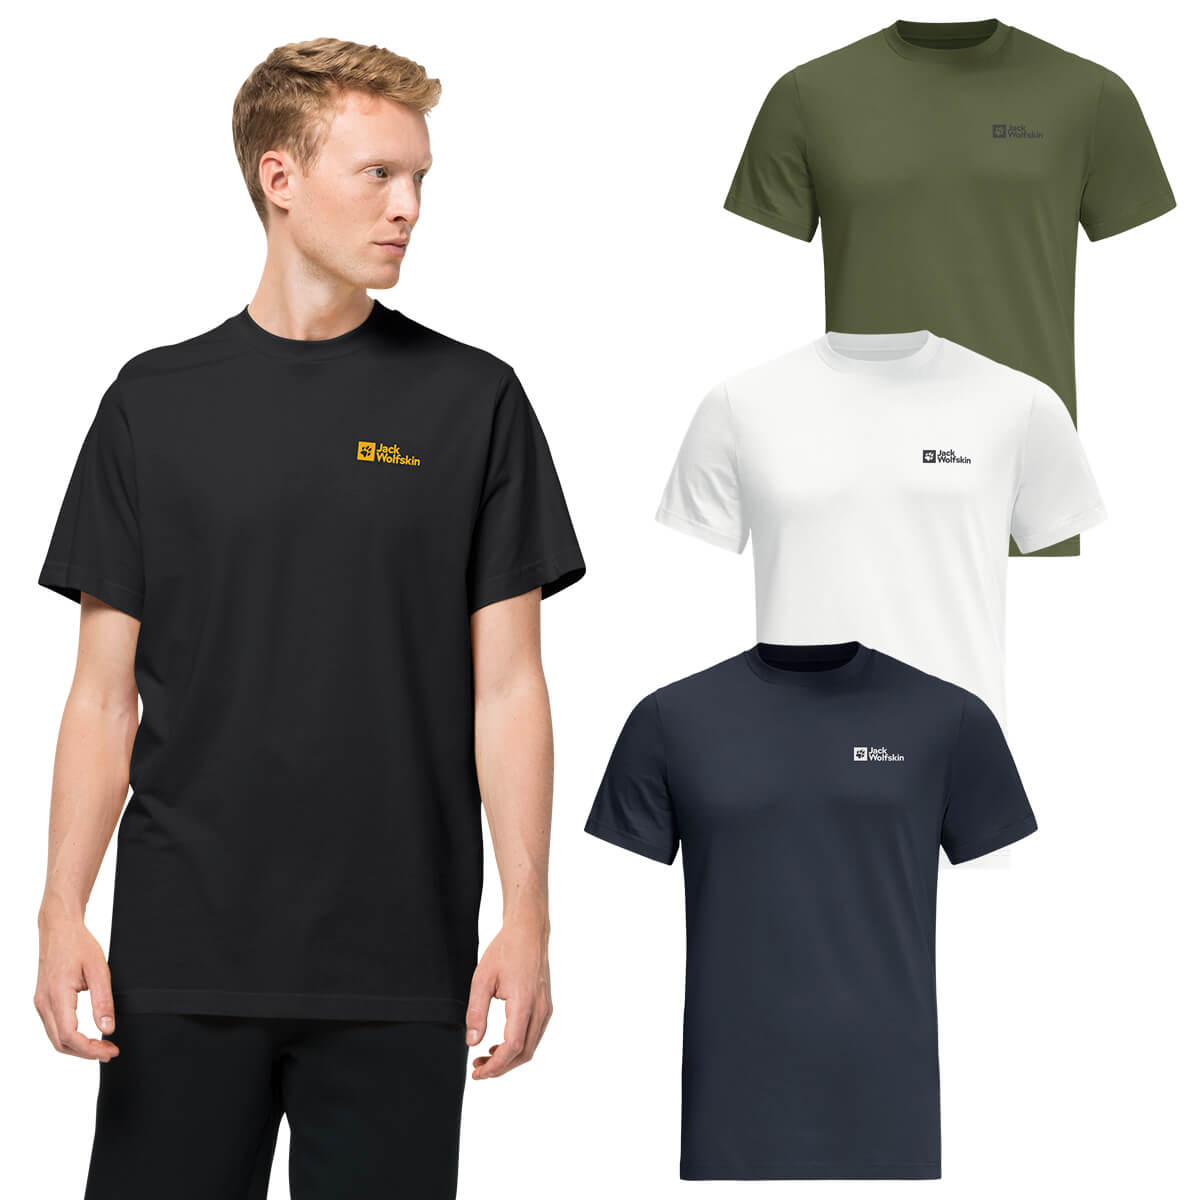 Jack Wolfskin Mens Essential Light Soft Organic Cotton T-Shirt | Sport-T-Shirts